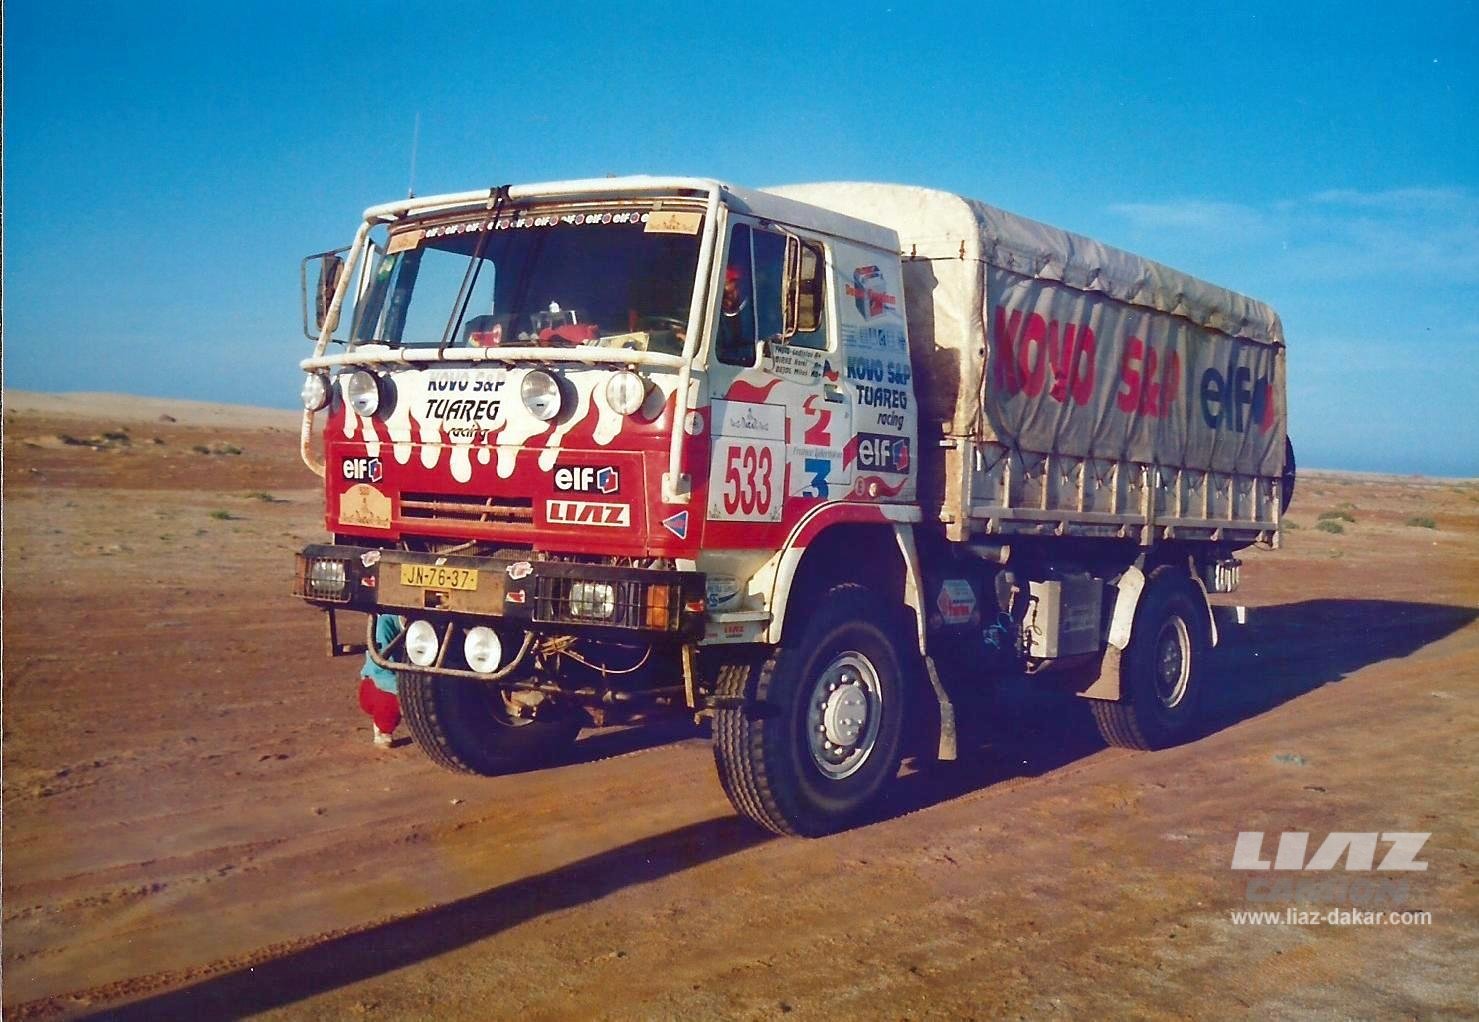 LIAZ Dakar 94